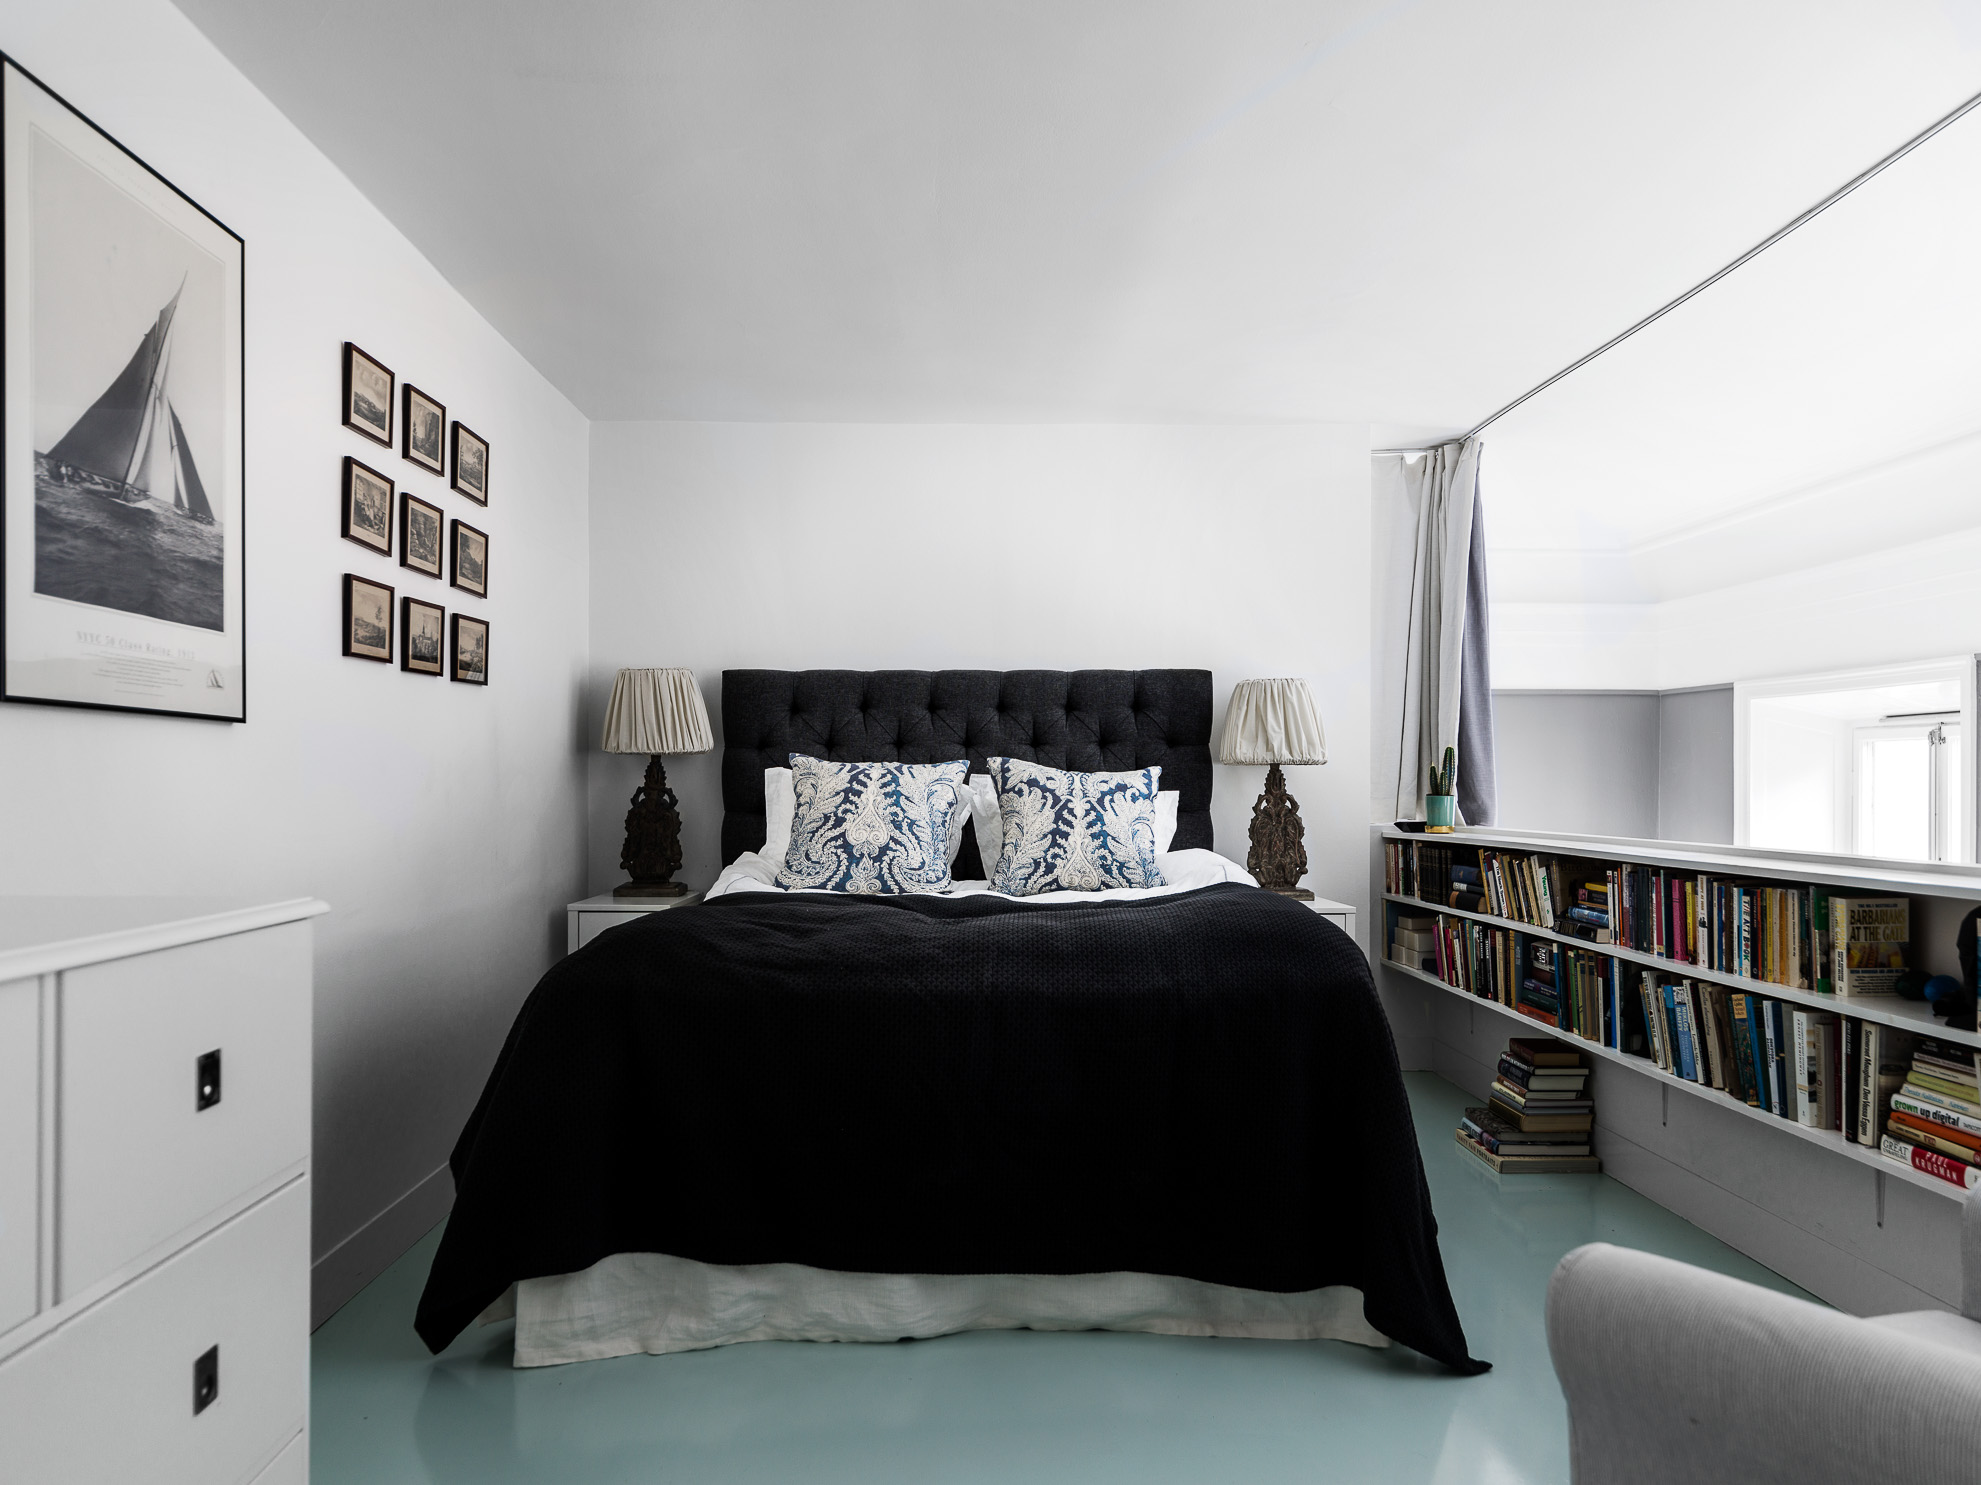 卧室区域则选用环氧树脂地坪（常见于学校及医院等公共场所）。